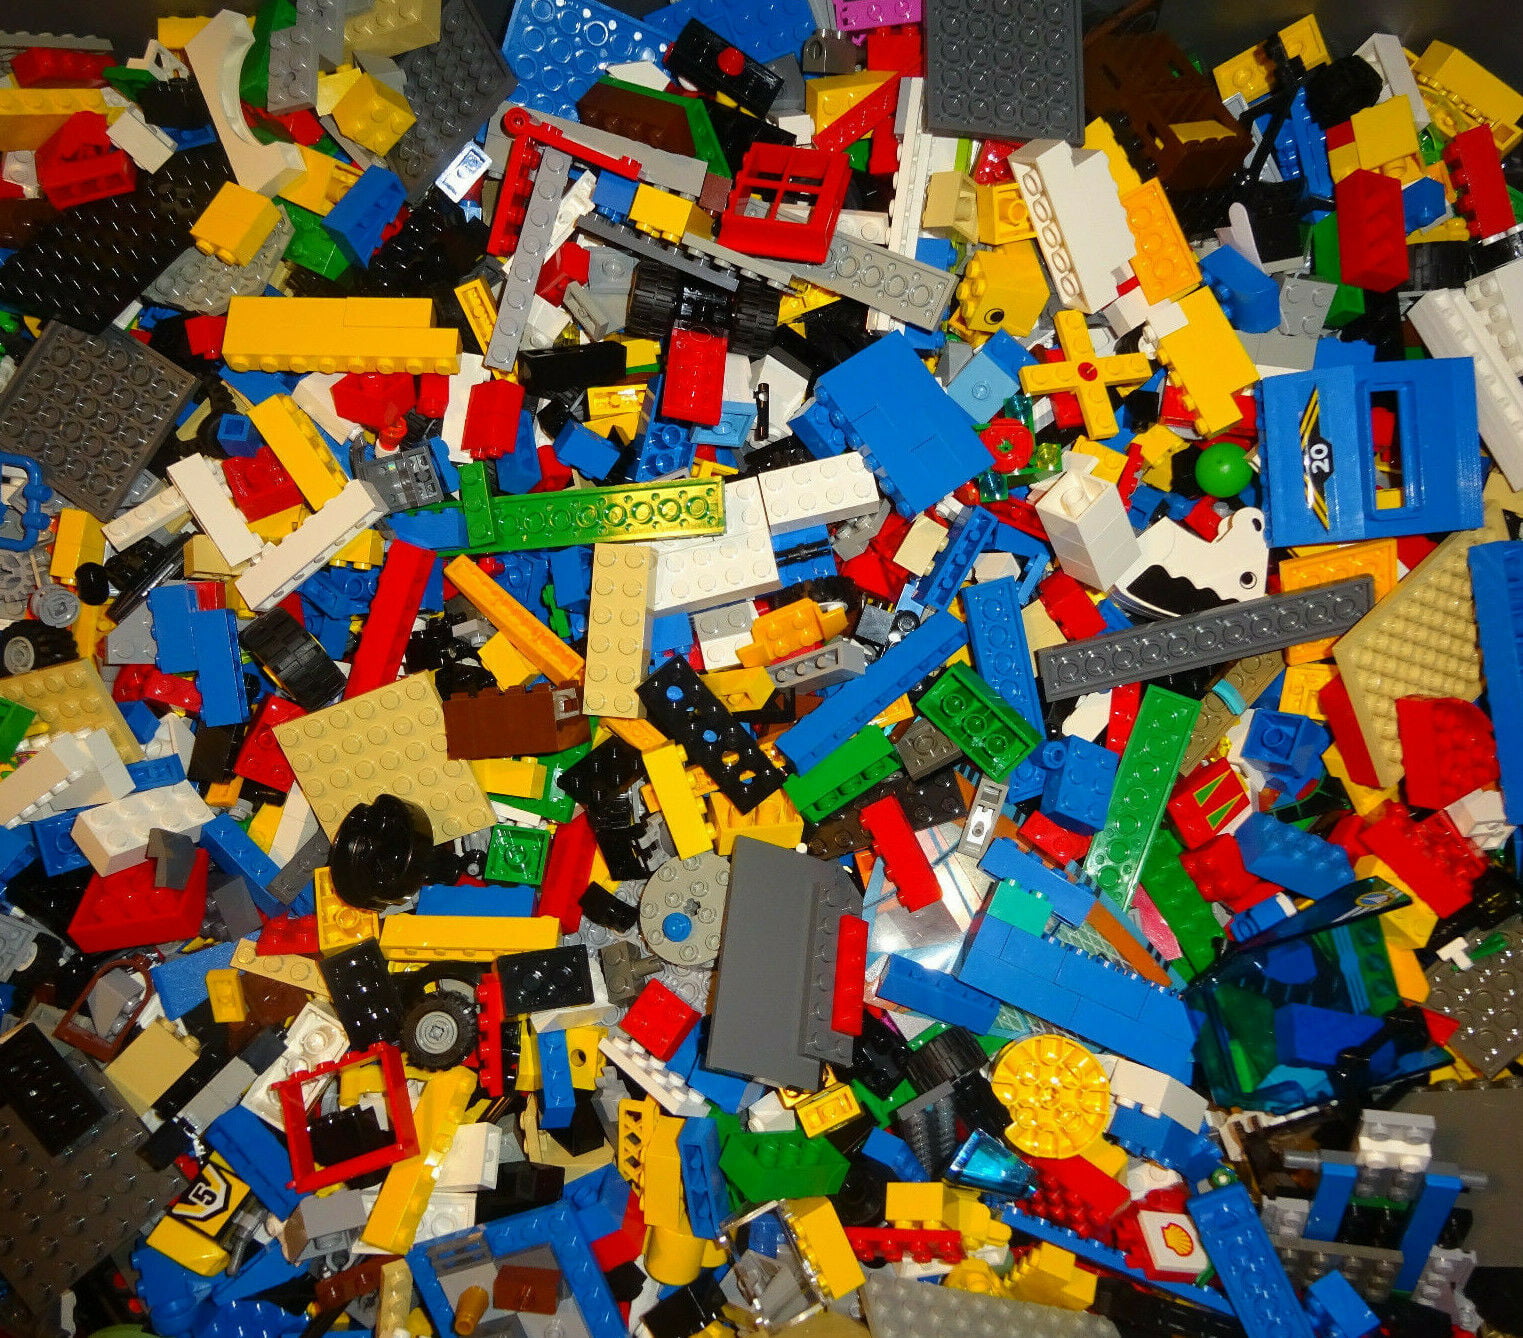 Accessories Job Lot Sets LEGO Bundle 1kg Mixed Bricks Parts Pieces Rare Old 